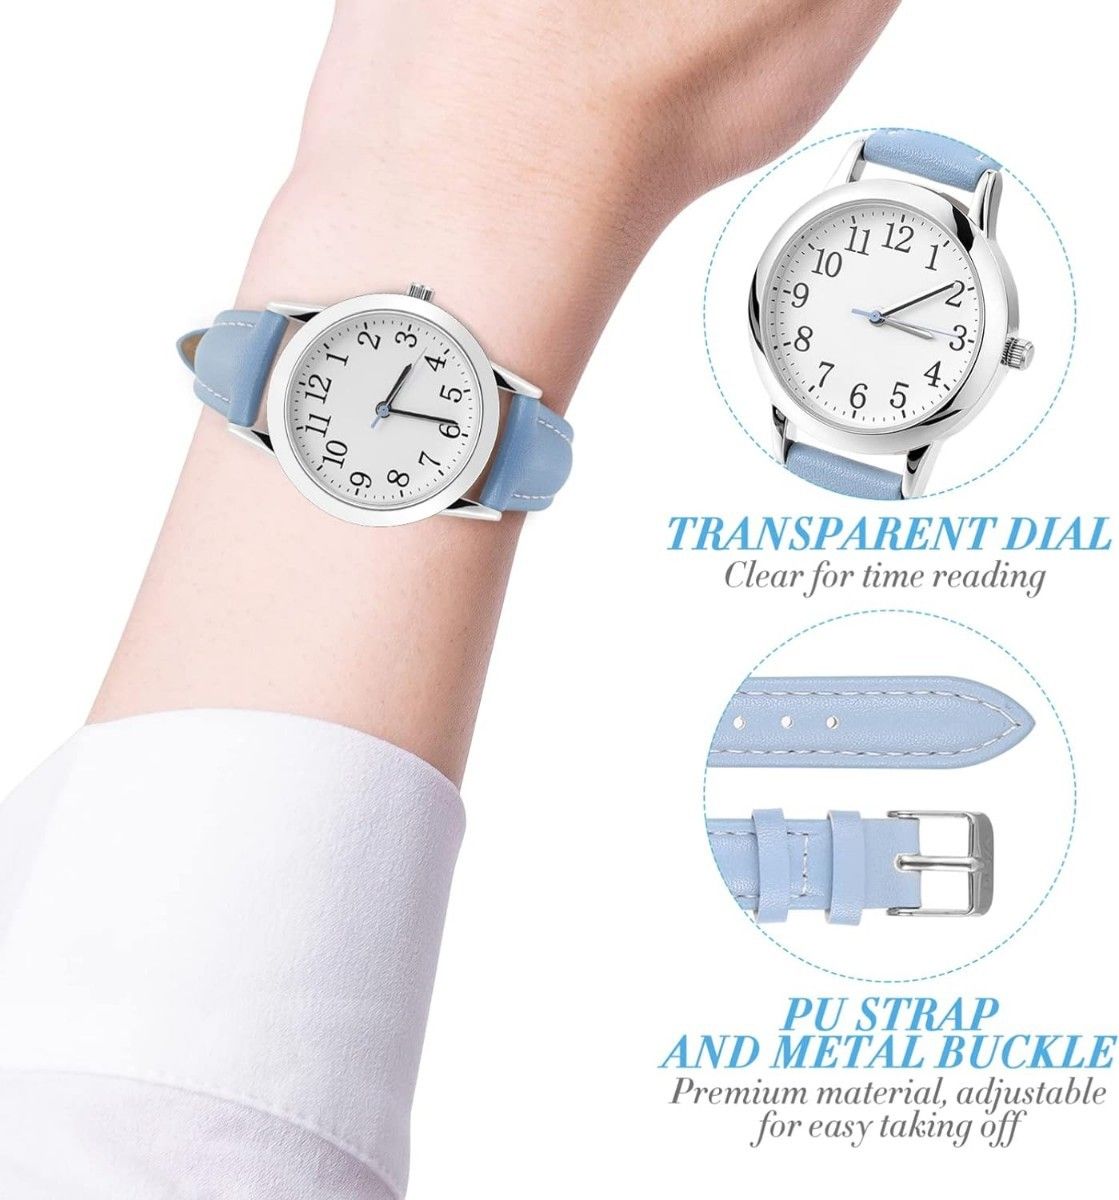 腕時計 女性 レディース 文字盤 3気圧防水 学生腕時計（色：ブラック）